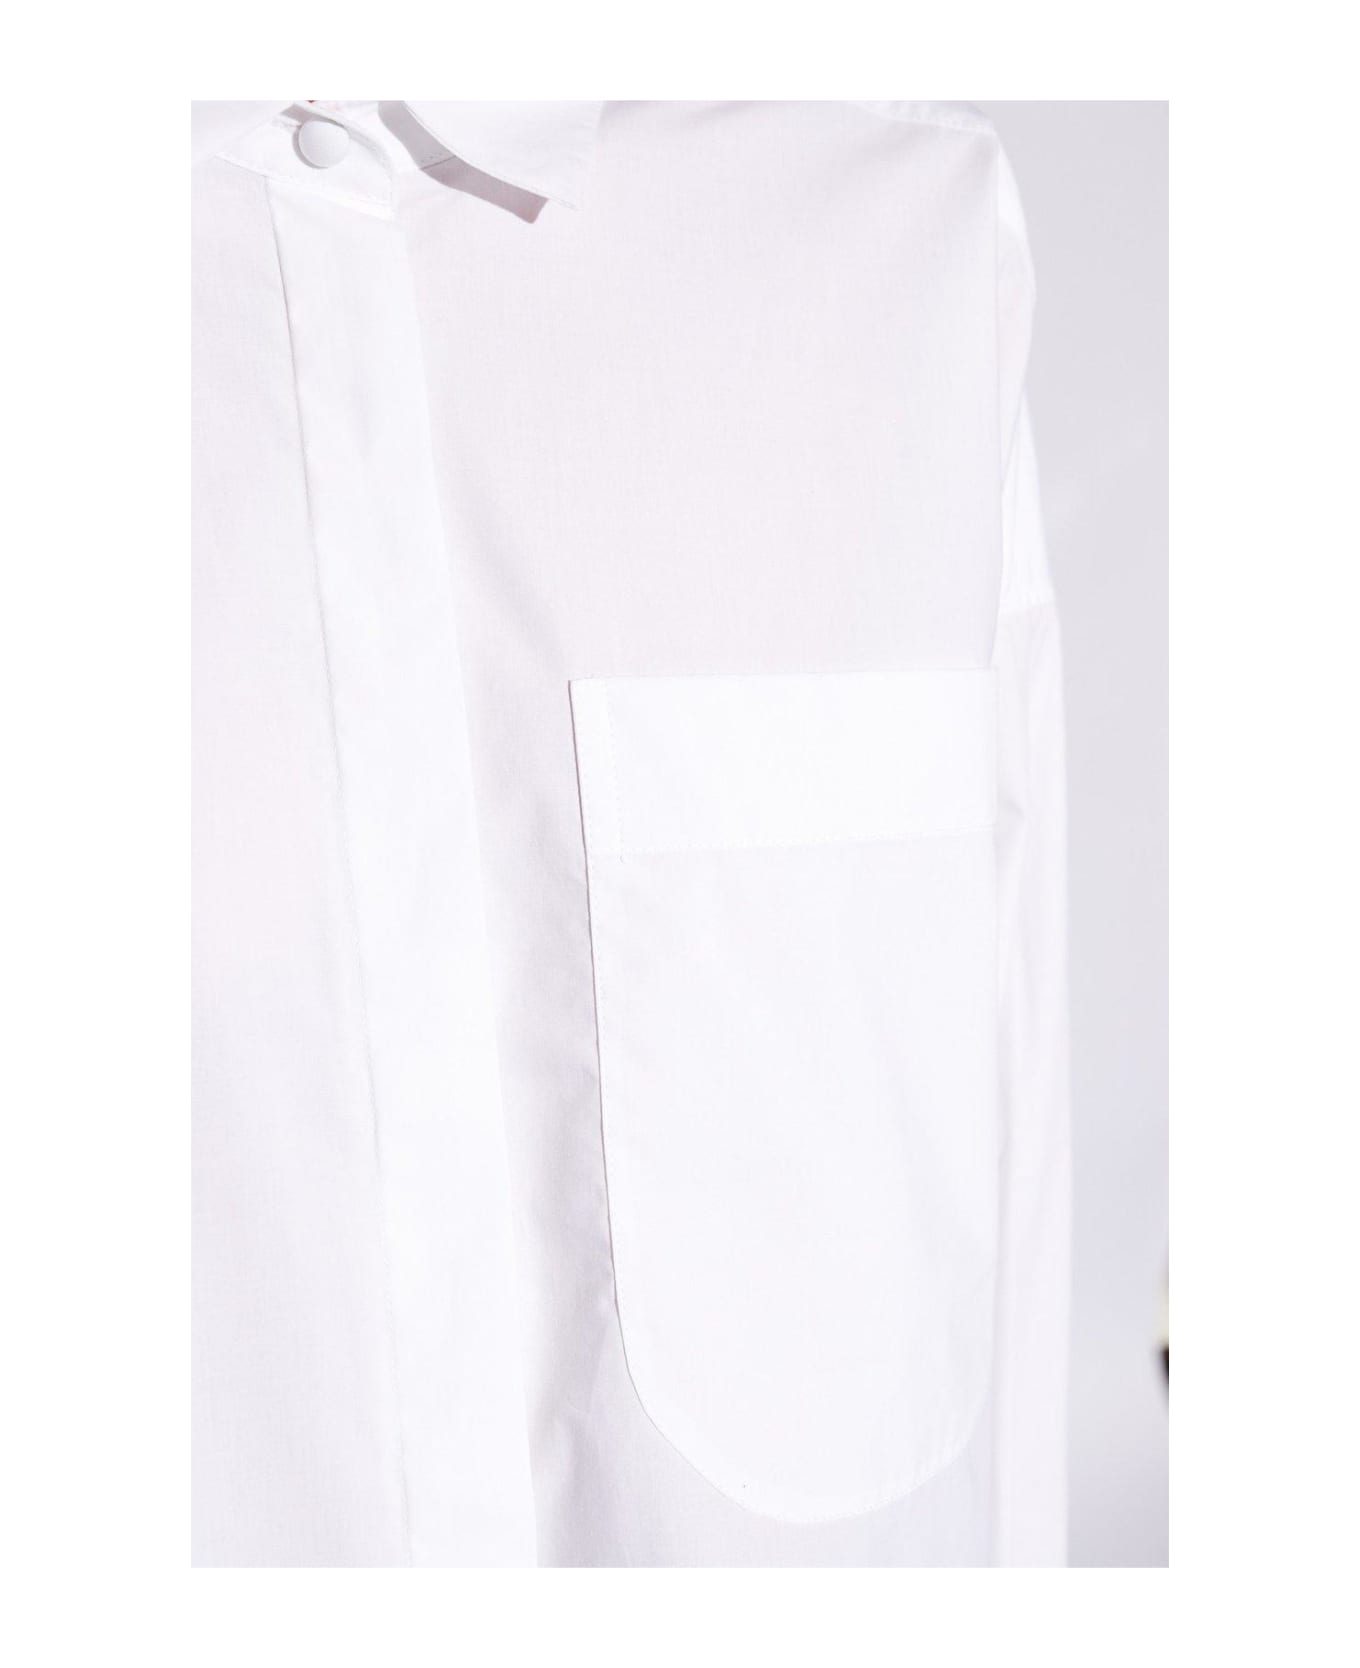 Emporio Armani Shirt With Pocket - White